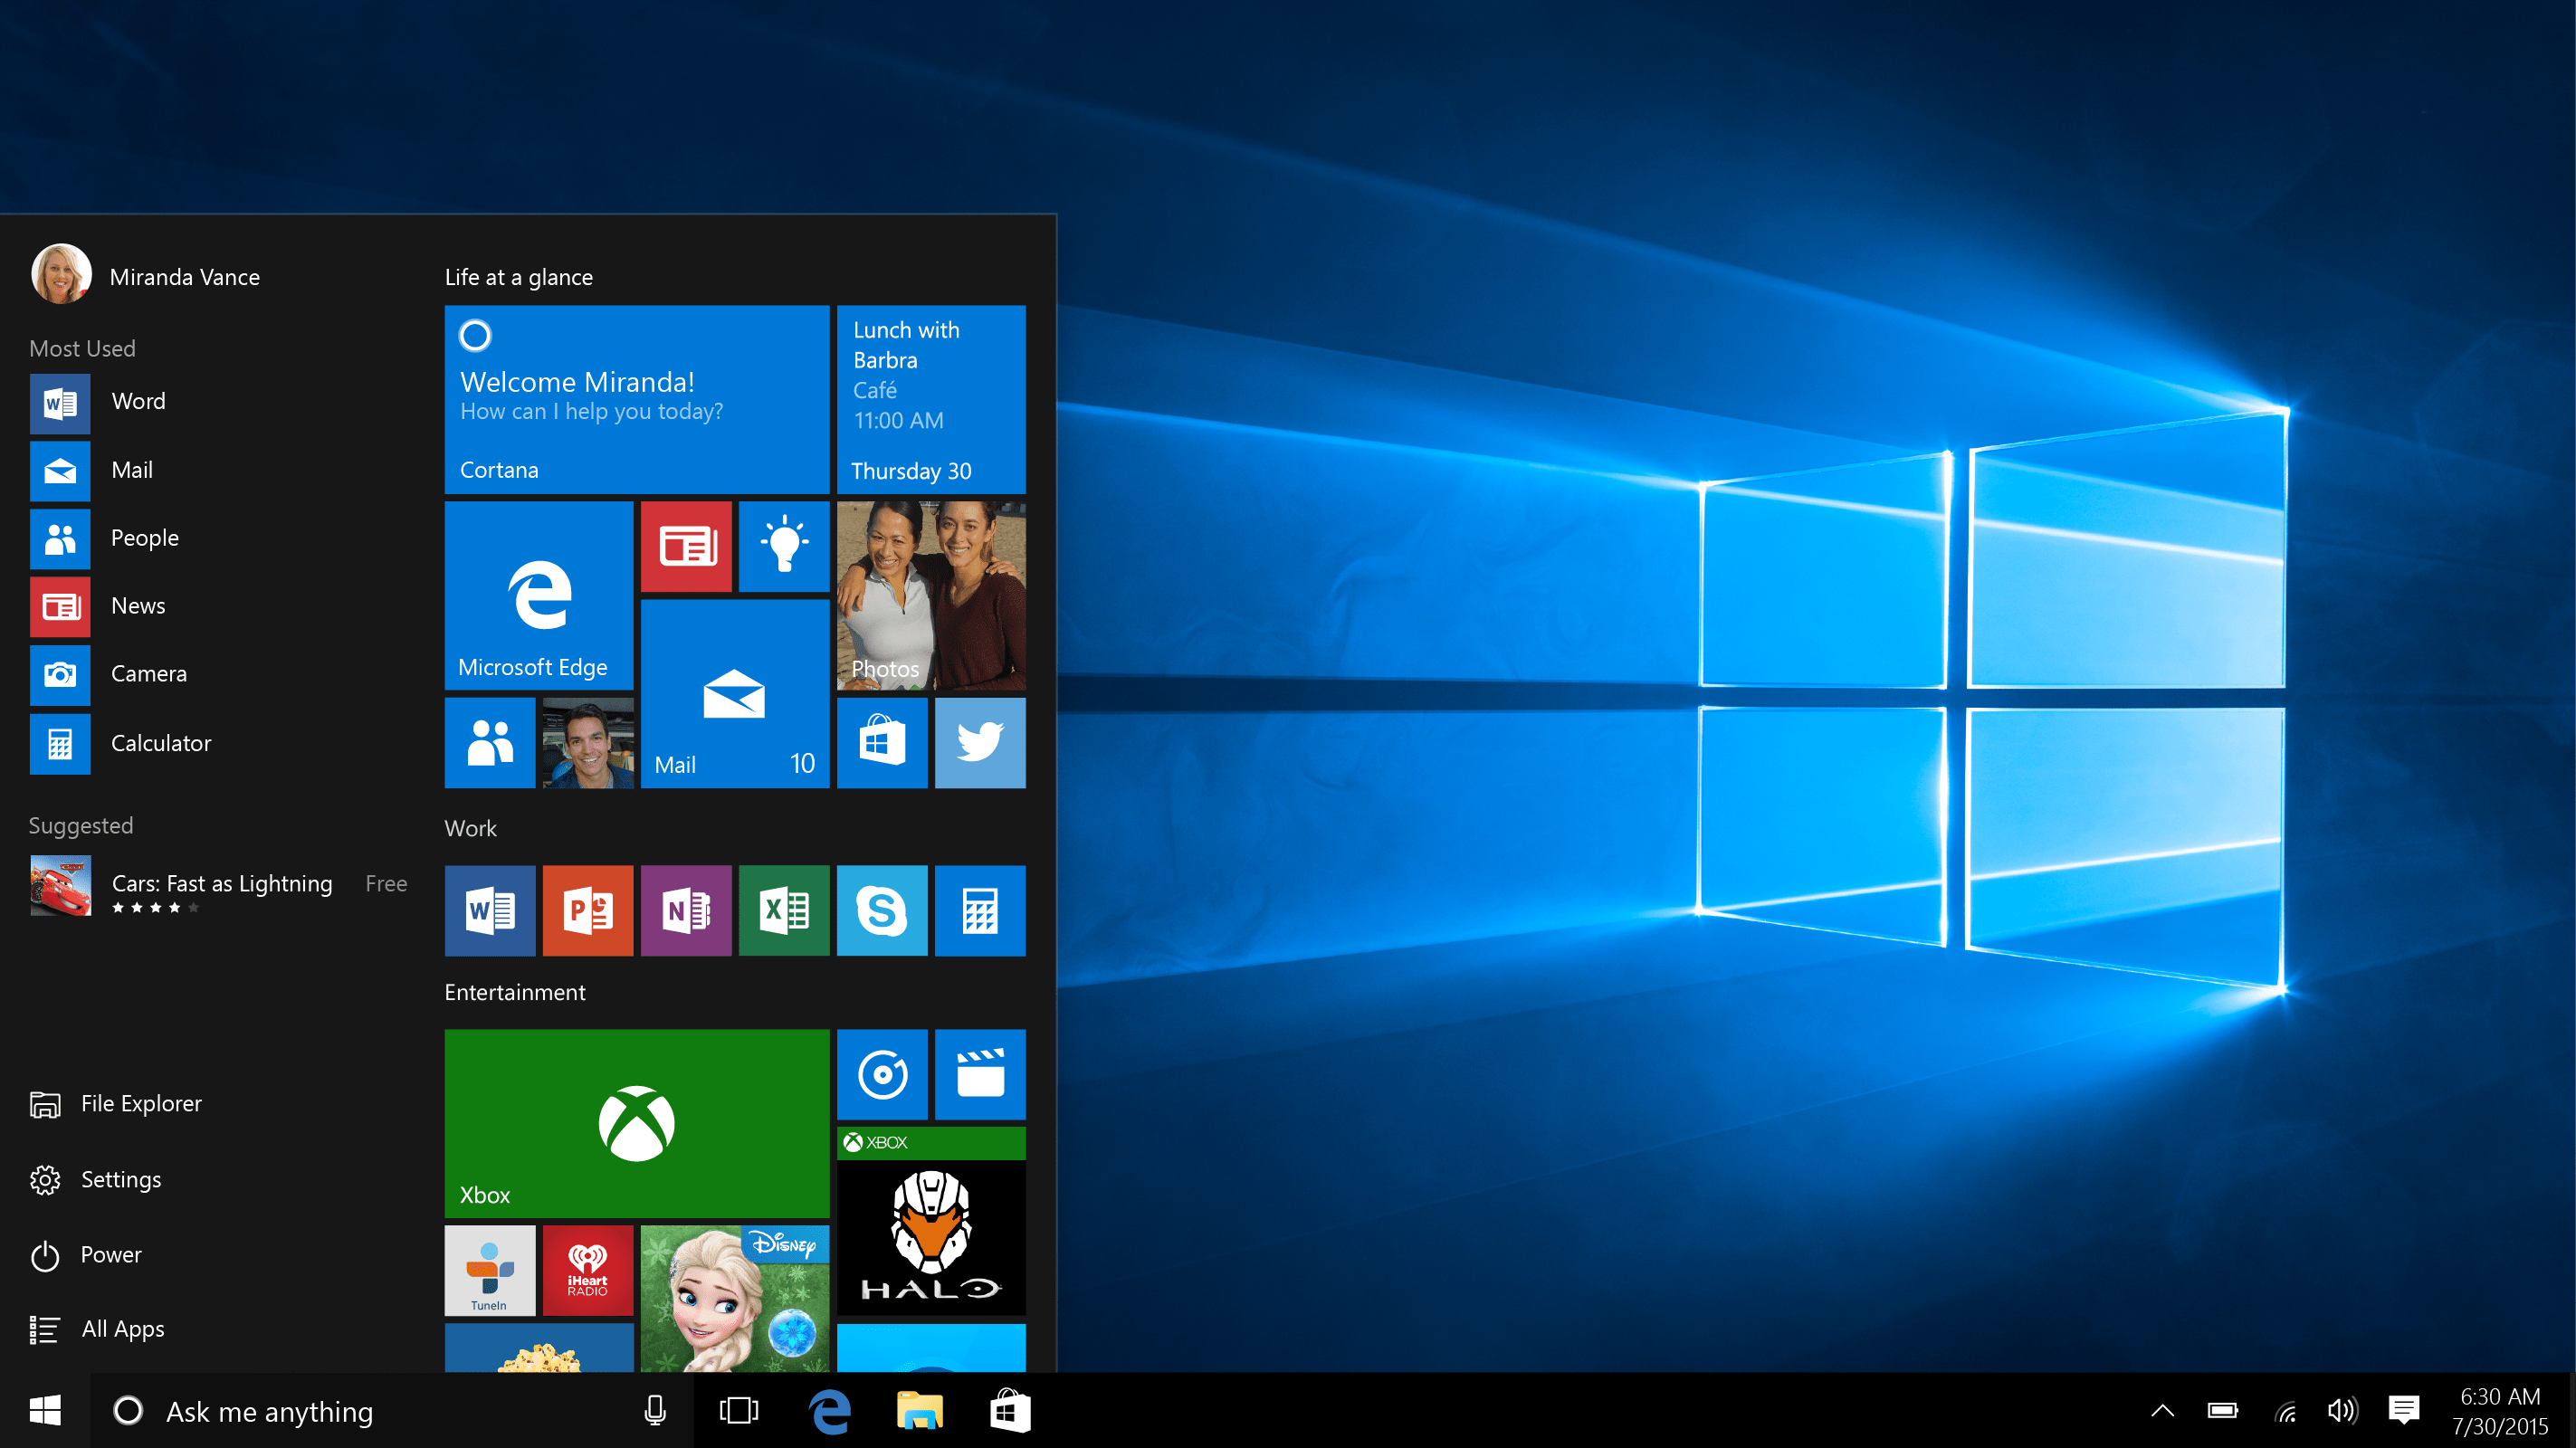 Comment obtenir de l'aide dans Windows 10 : le support en ligne de Microsoft pourrait résoudre vos problèmes